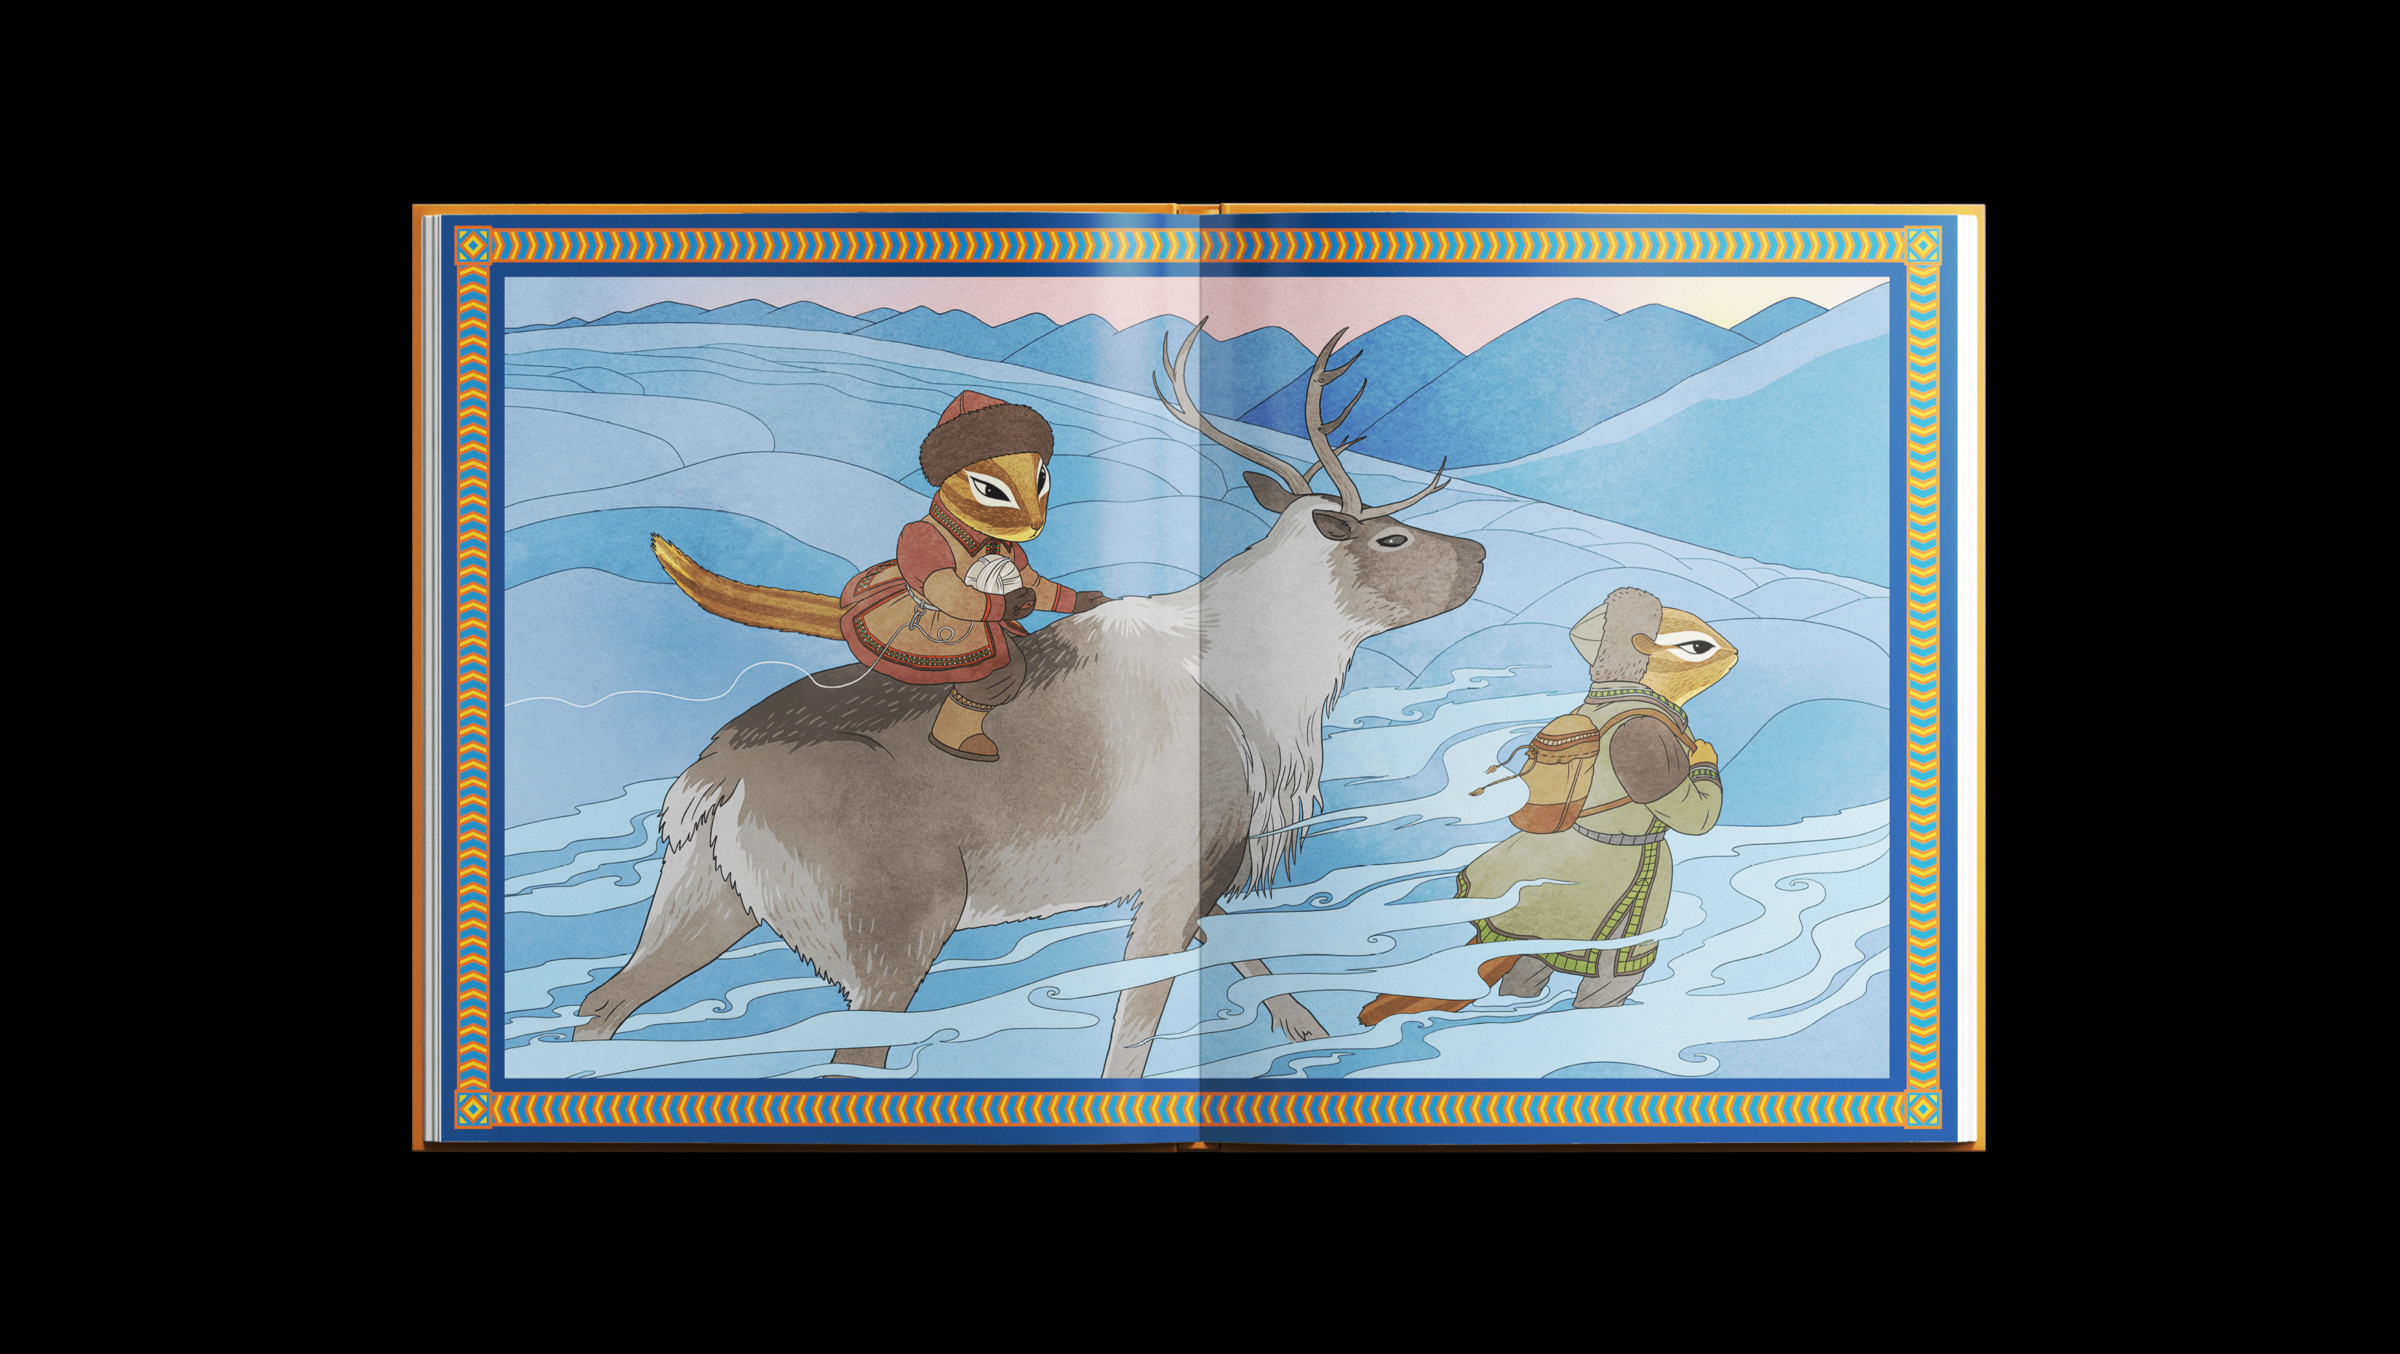 иллюстрировали сказки, нарисовали главных героев — людей, животных и мифических персонажей. Изобразили персонажей сказок в национальной якутской одежде.